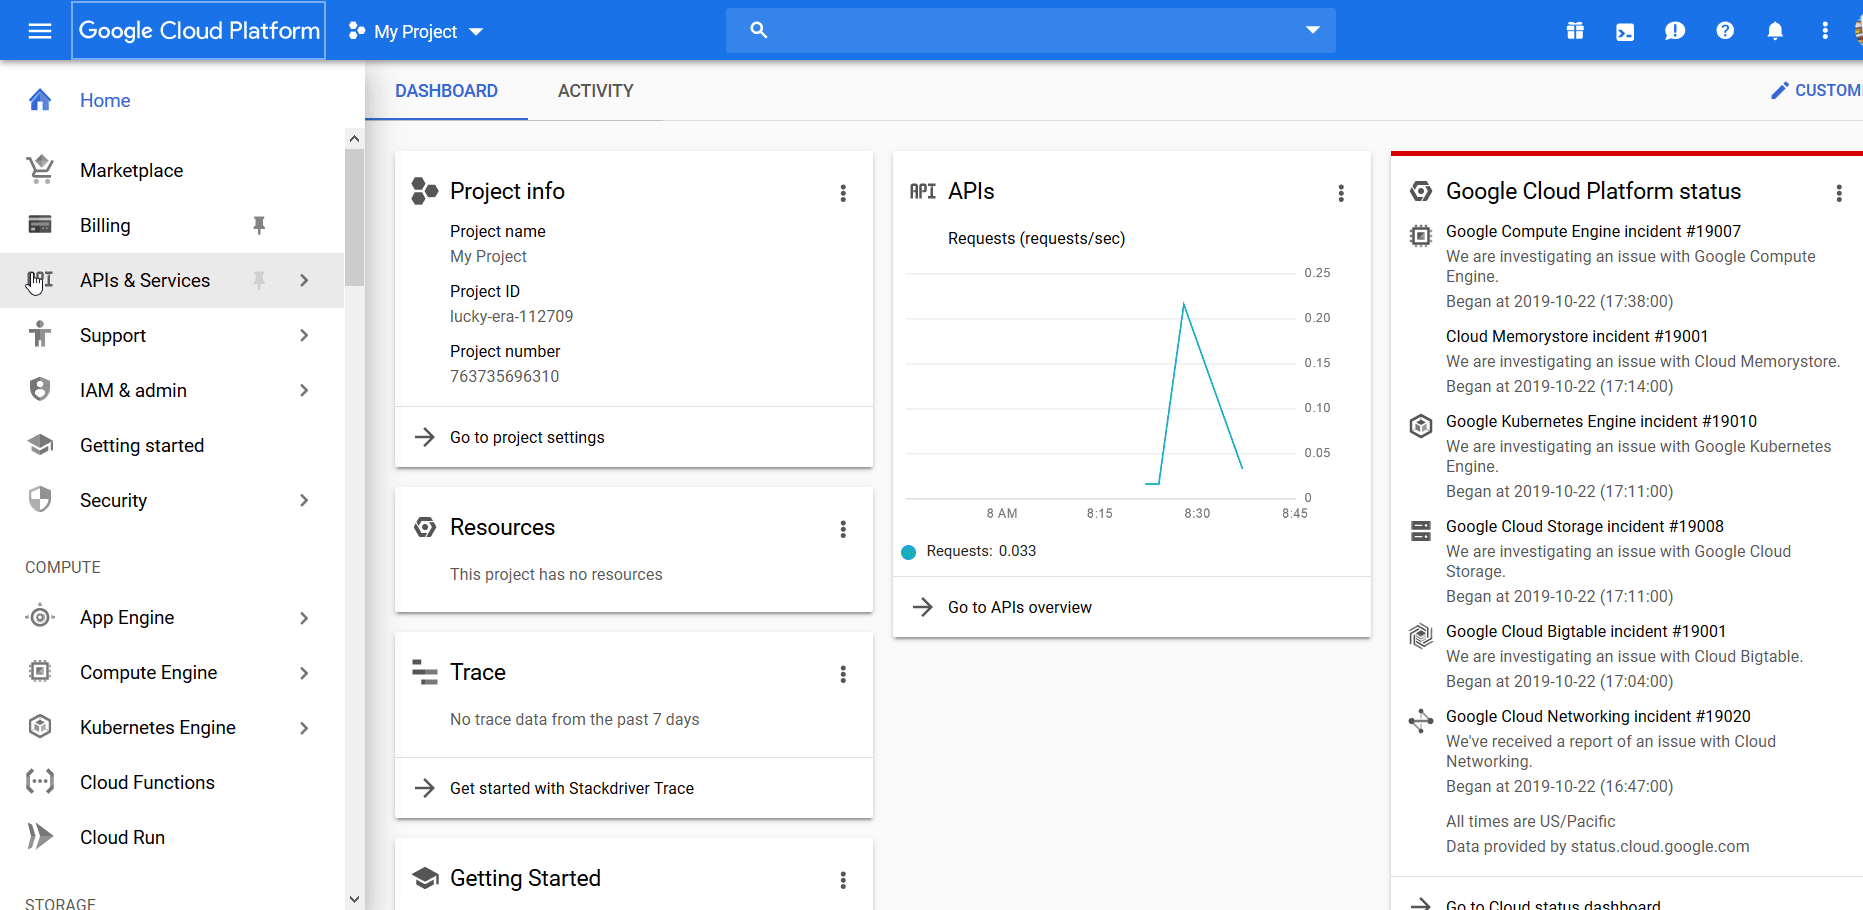 Google Analytics Besucherzahl